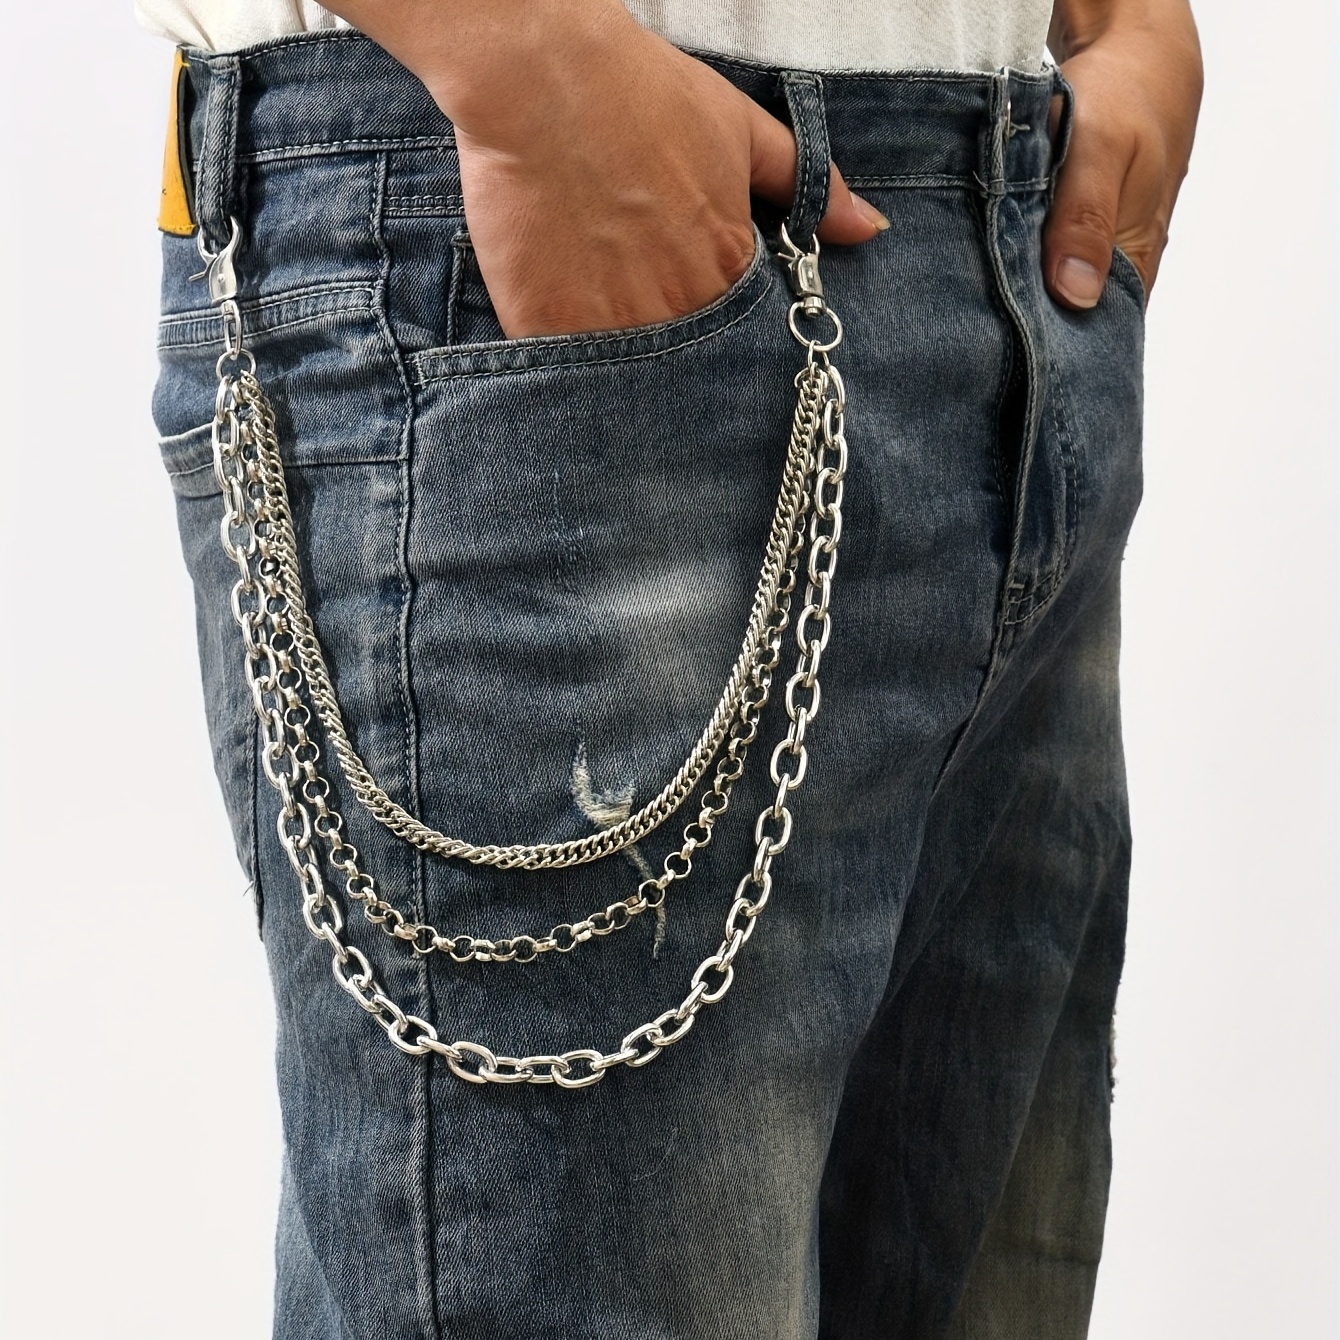 Men's Pants Chains Spider Decoration Layered Hip Hop Pants - Temu